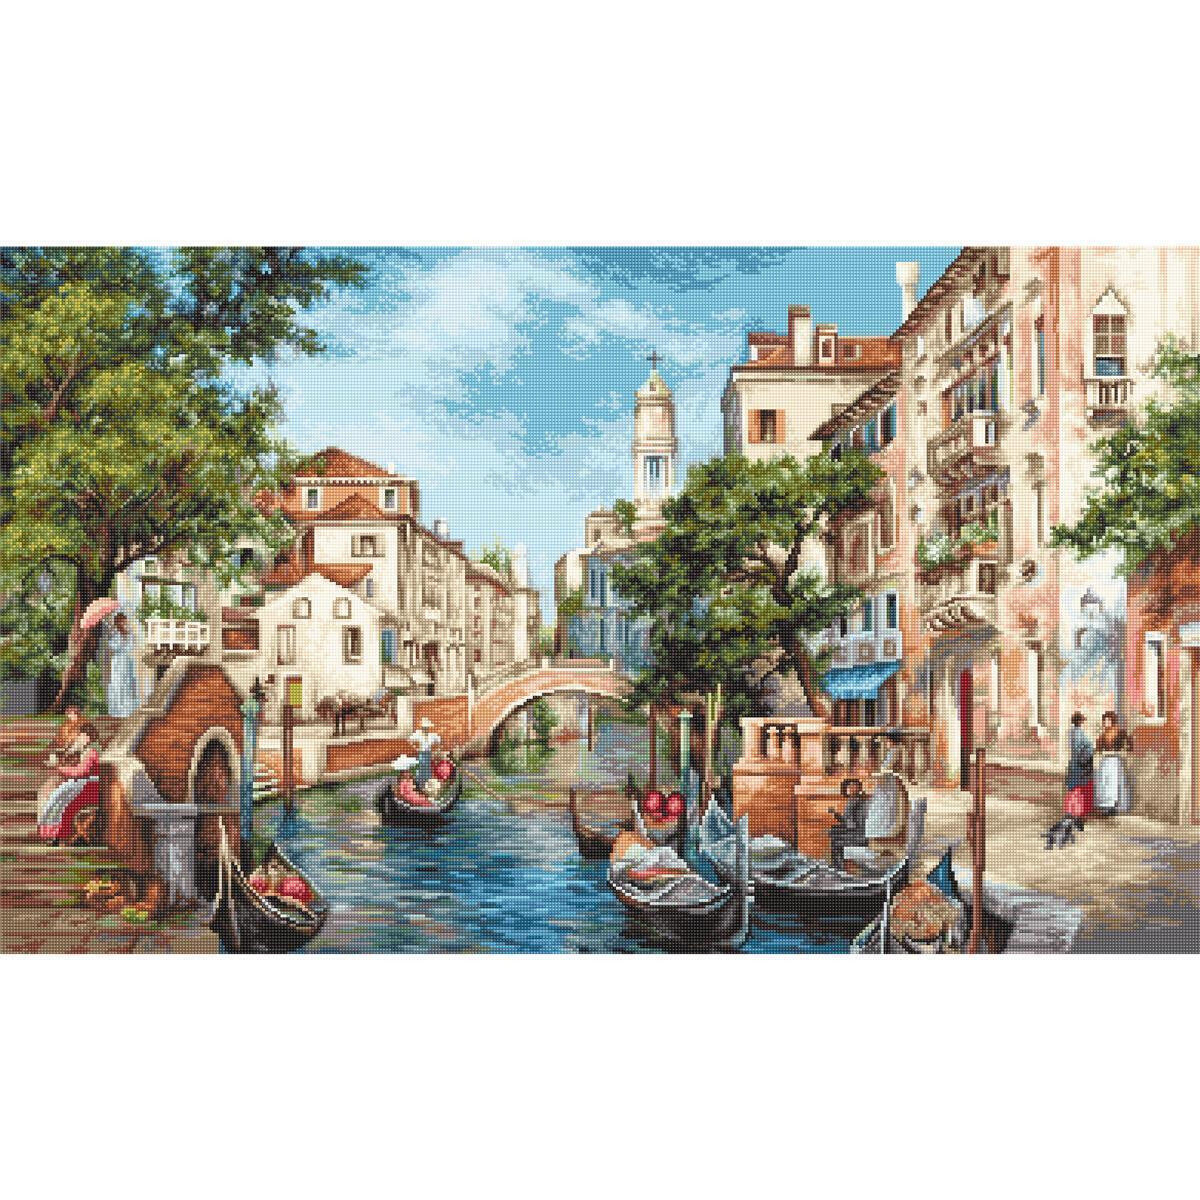 Eine malerische Kanalszene in Venedig mit Gondeln, die...